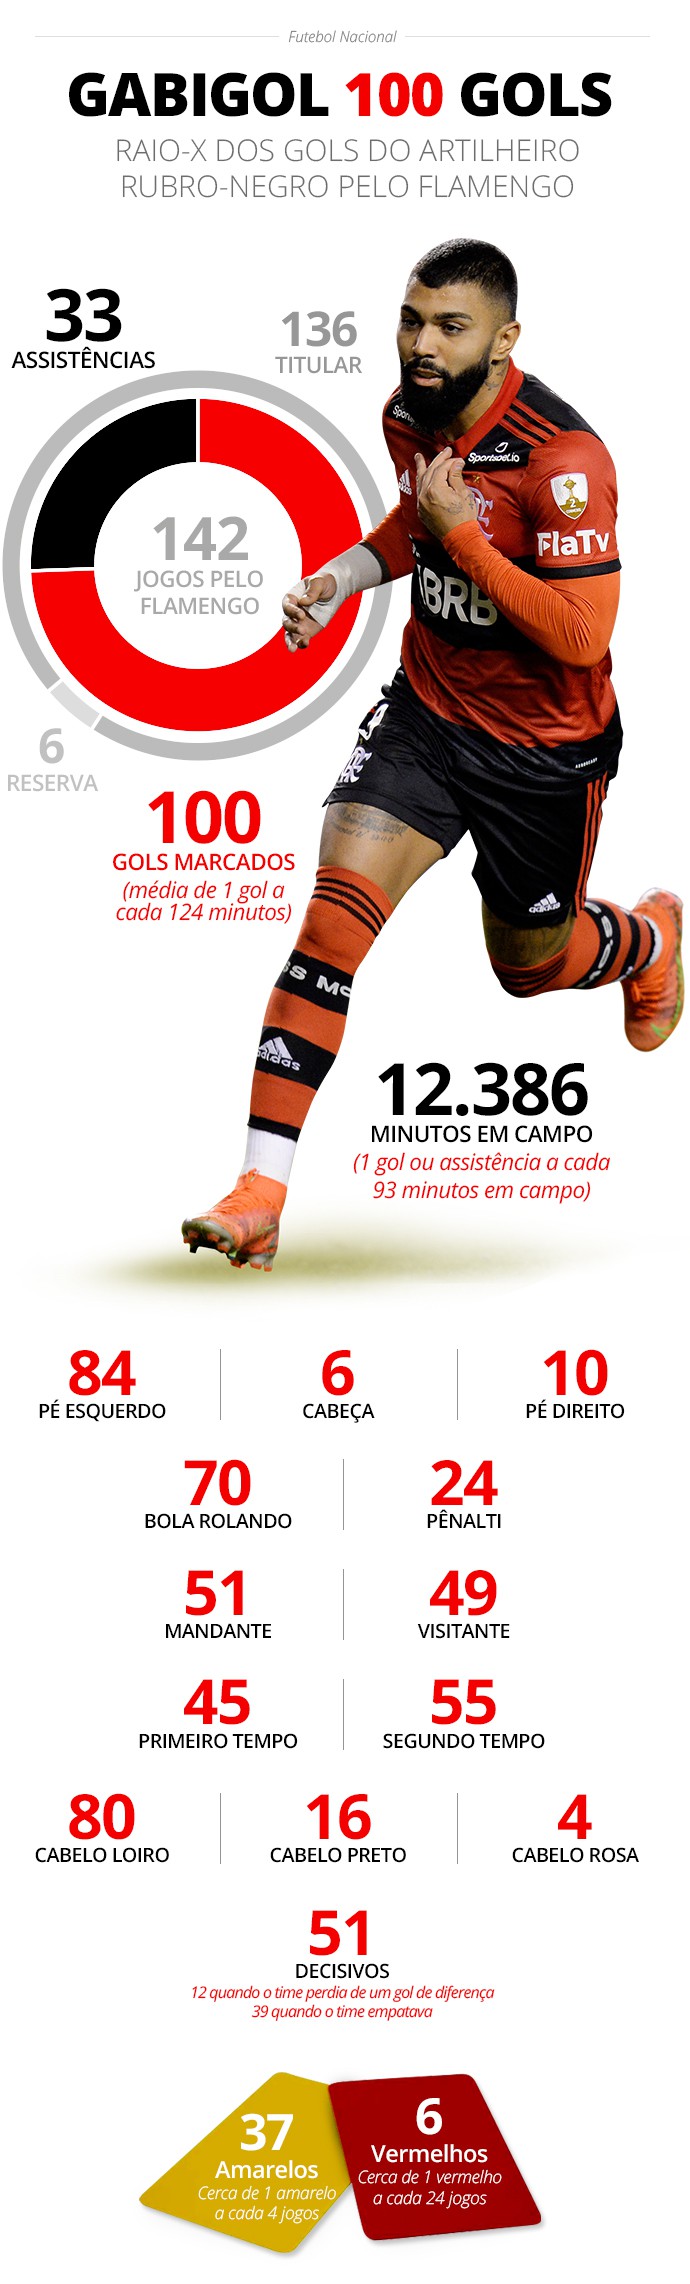 Destaques gerais dos 100 gols de Gabigol pelo Flamengo - Infoesporte